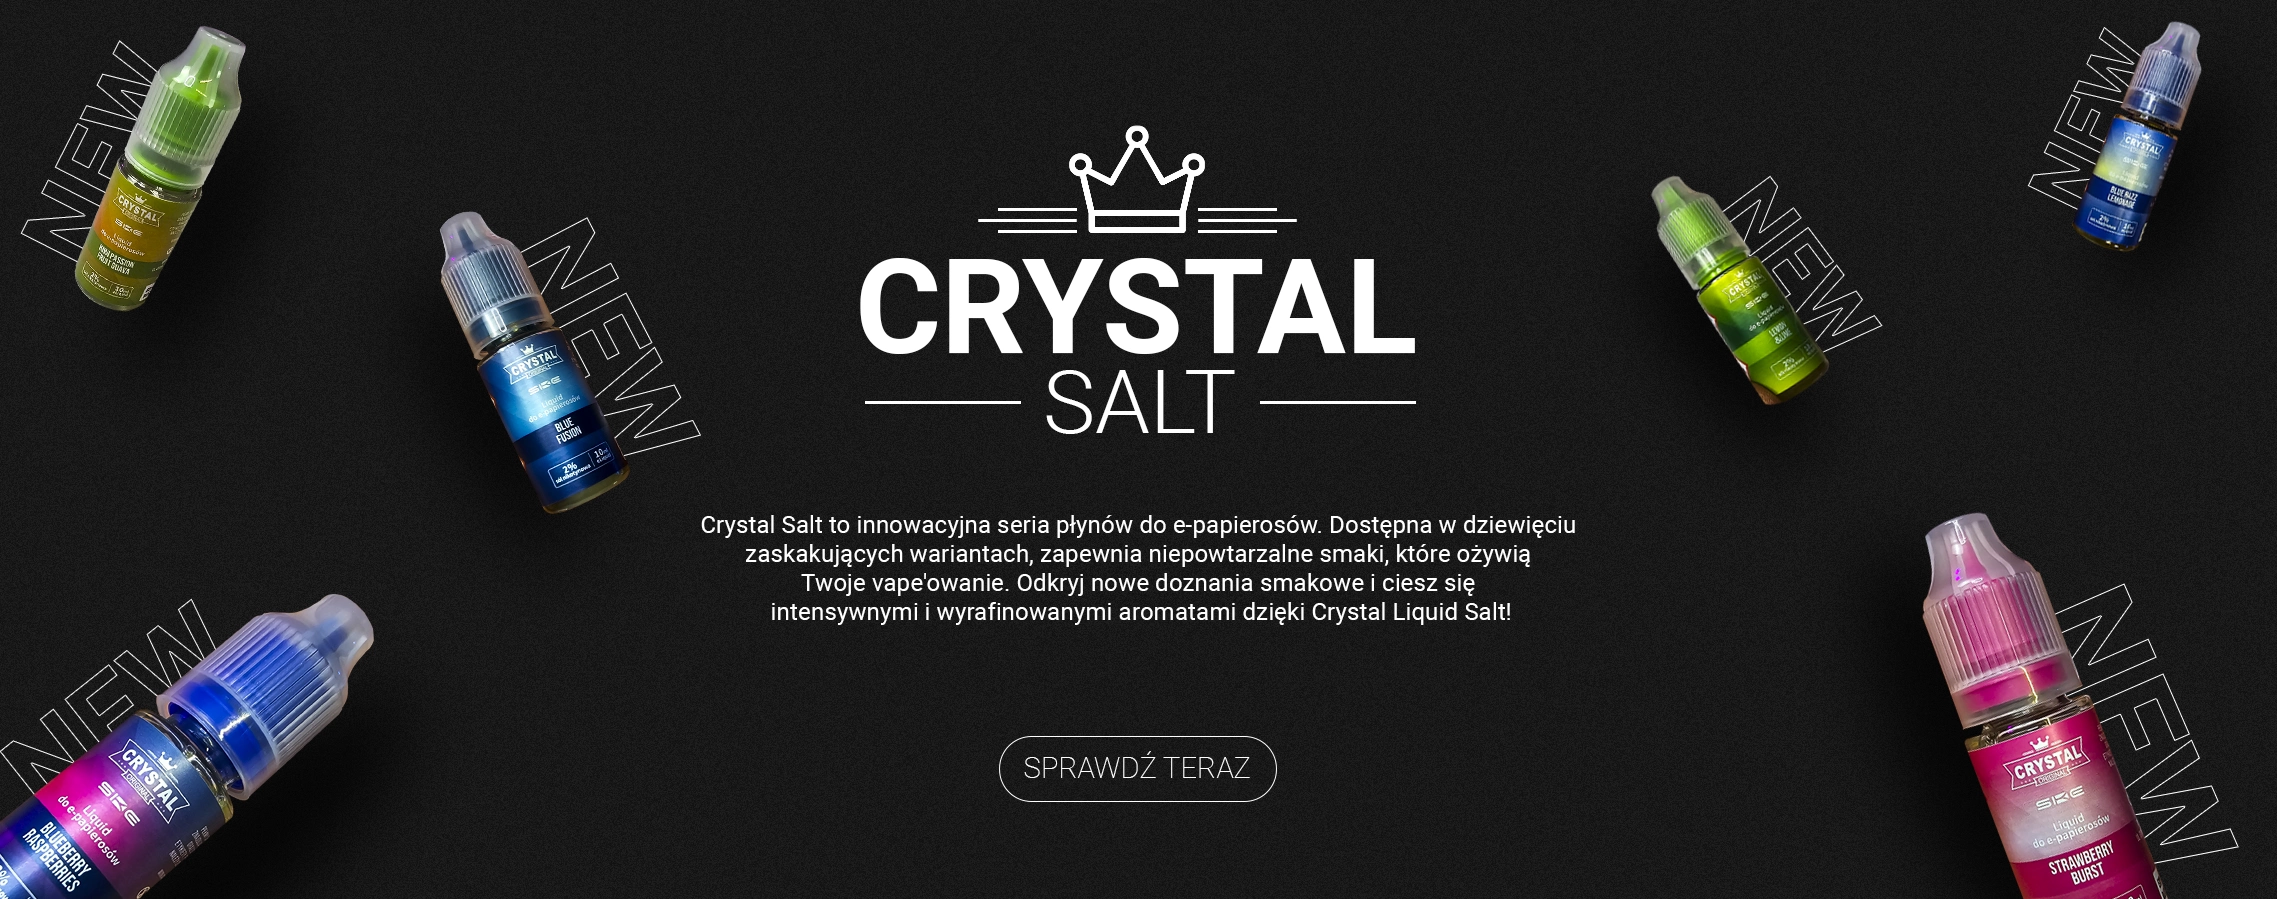 Crystal-Salt-Baner(1)